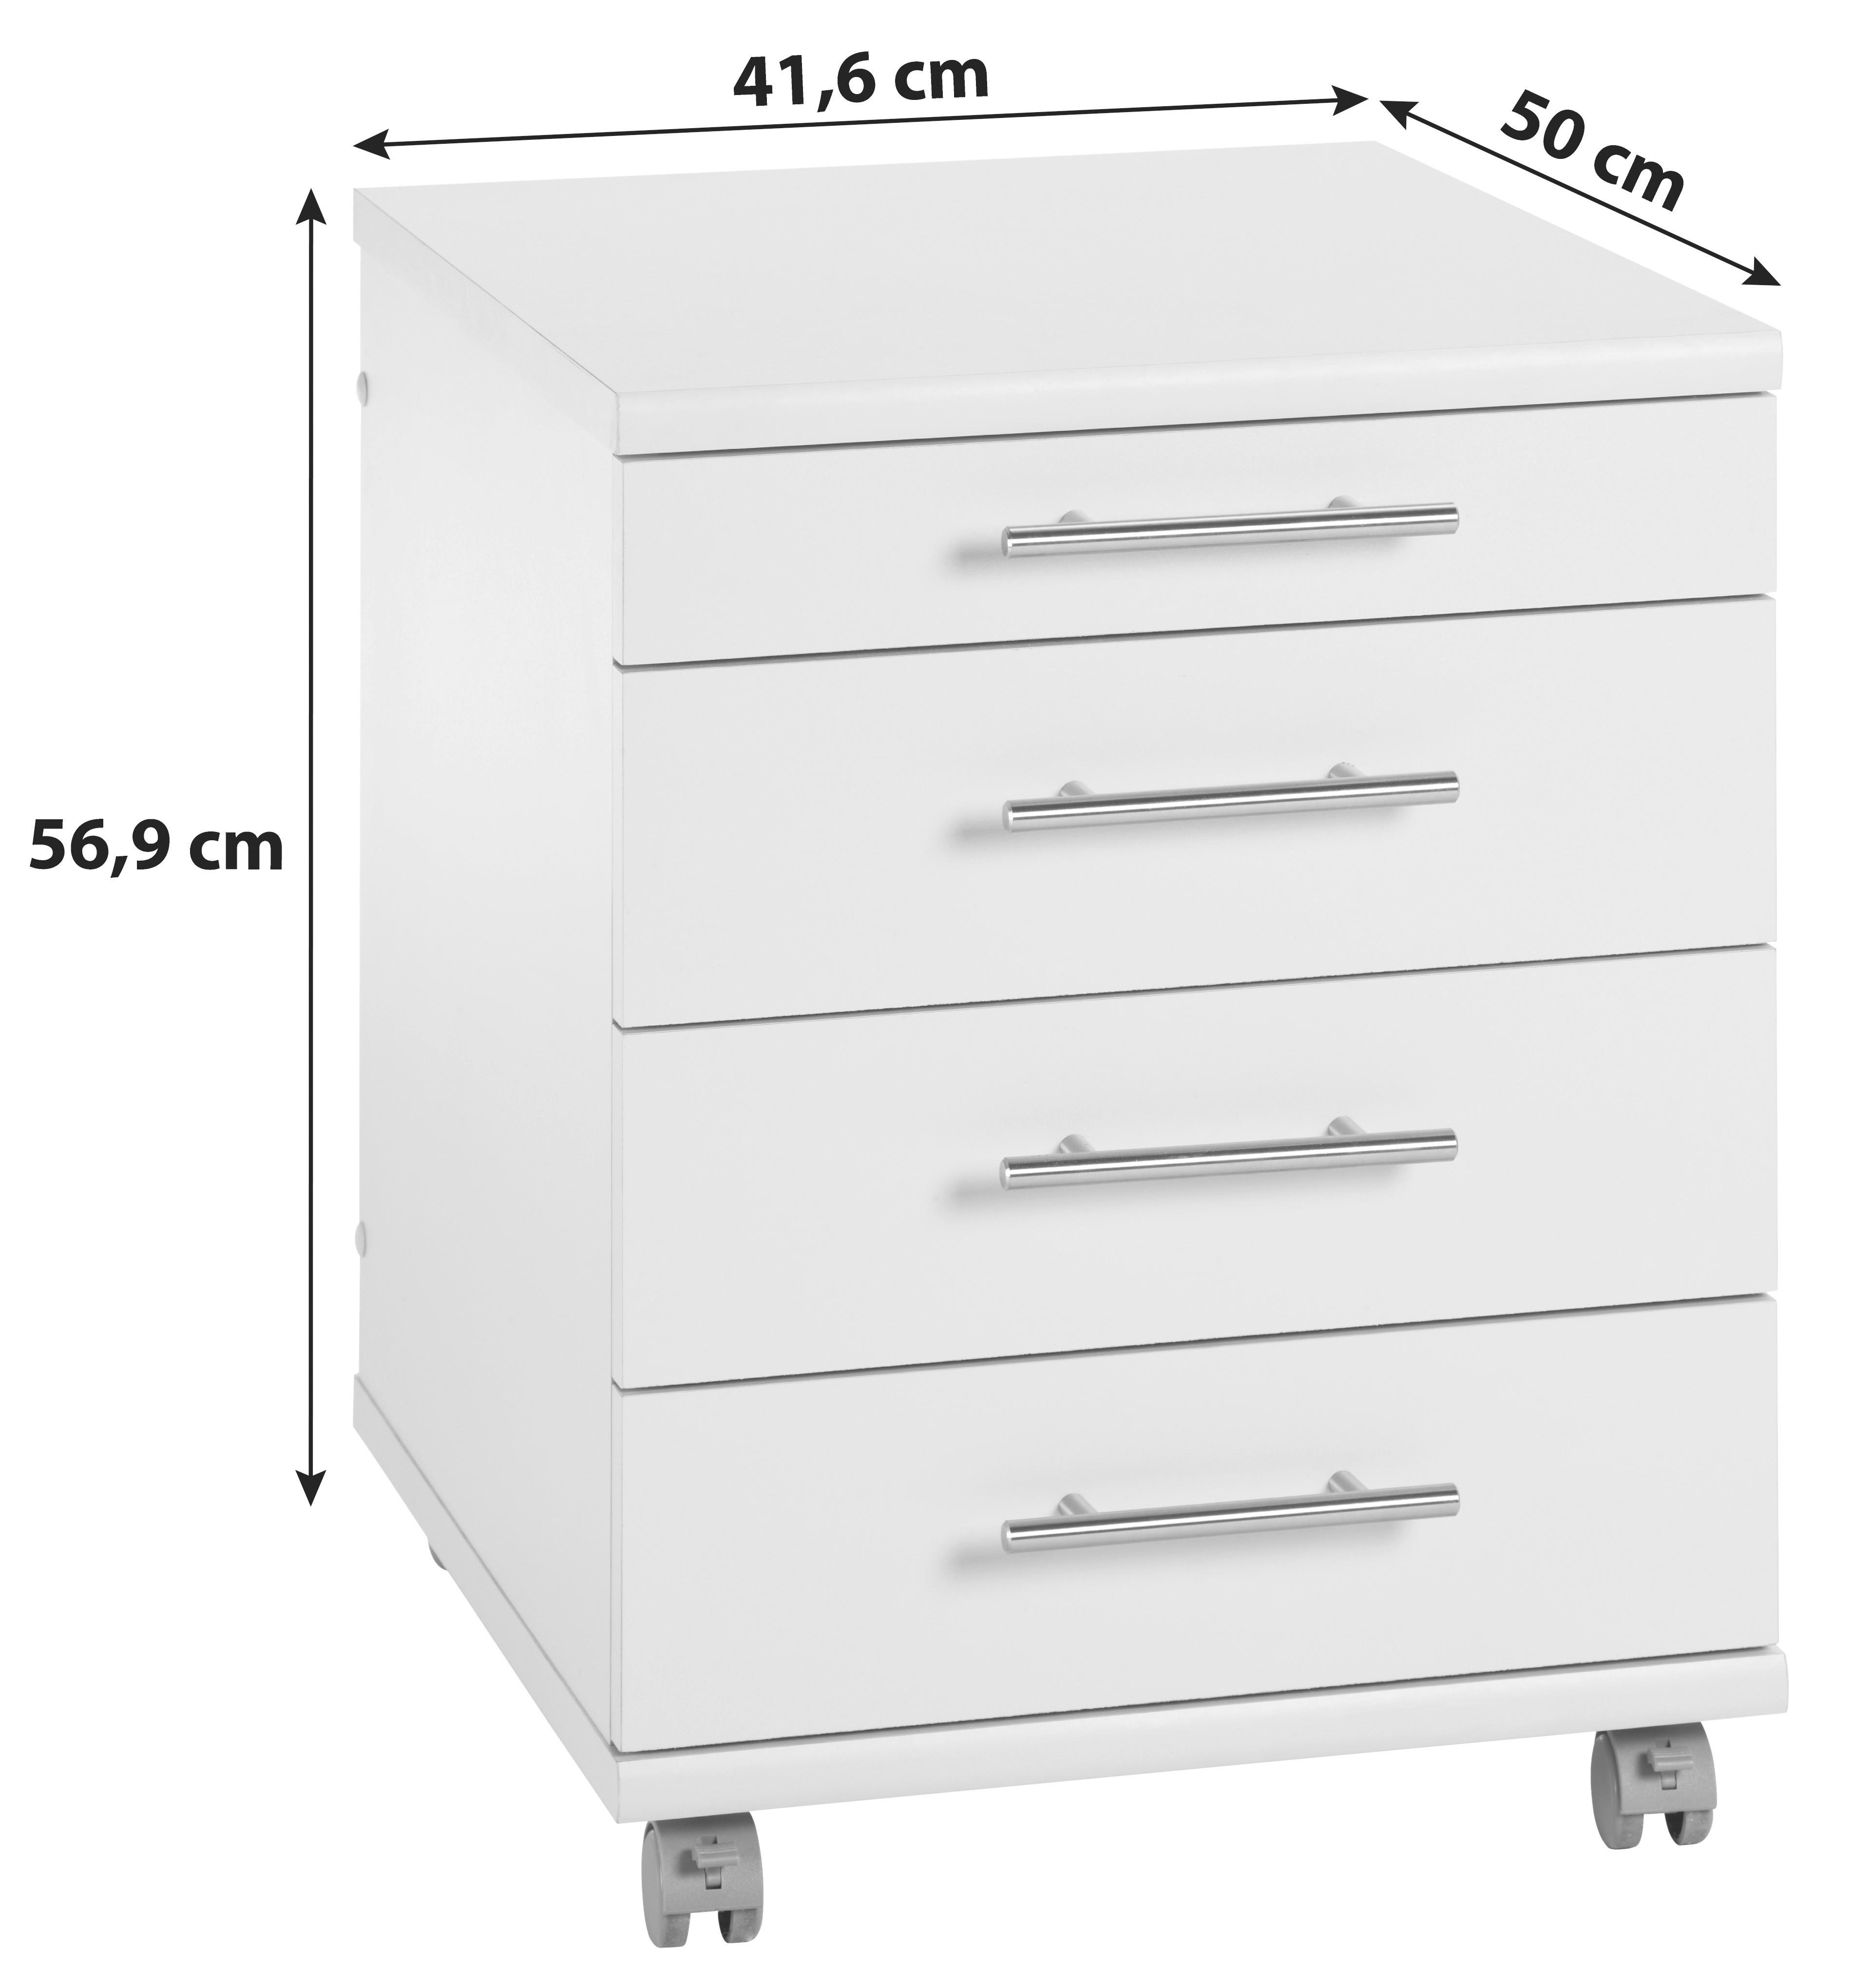 Rollcontainer "Serie 500" , weiß - Silberfarben/Weiß, Basics, Holzwerkstoff/Kunststoff (41,6/56,9/50cm) - MID.YOU